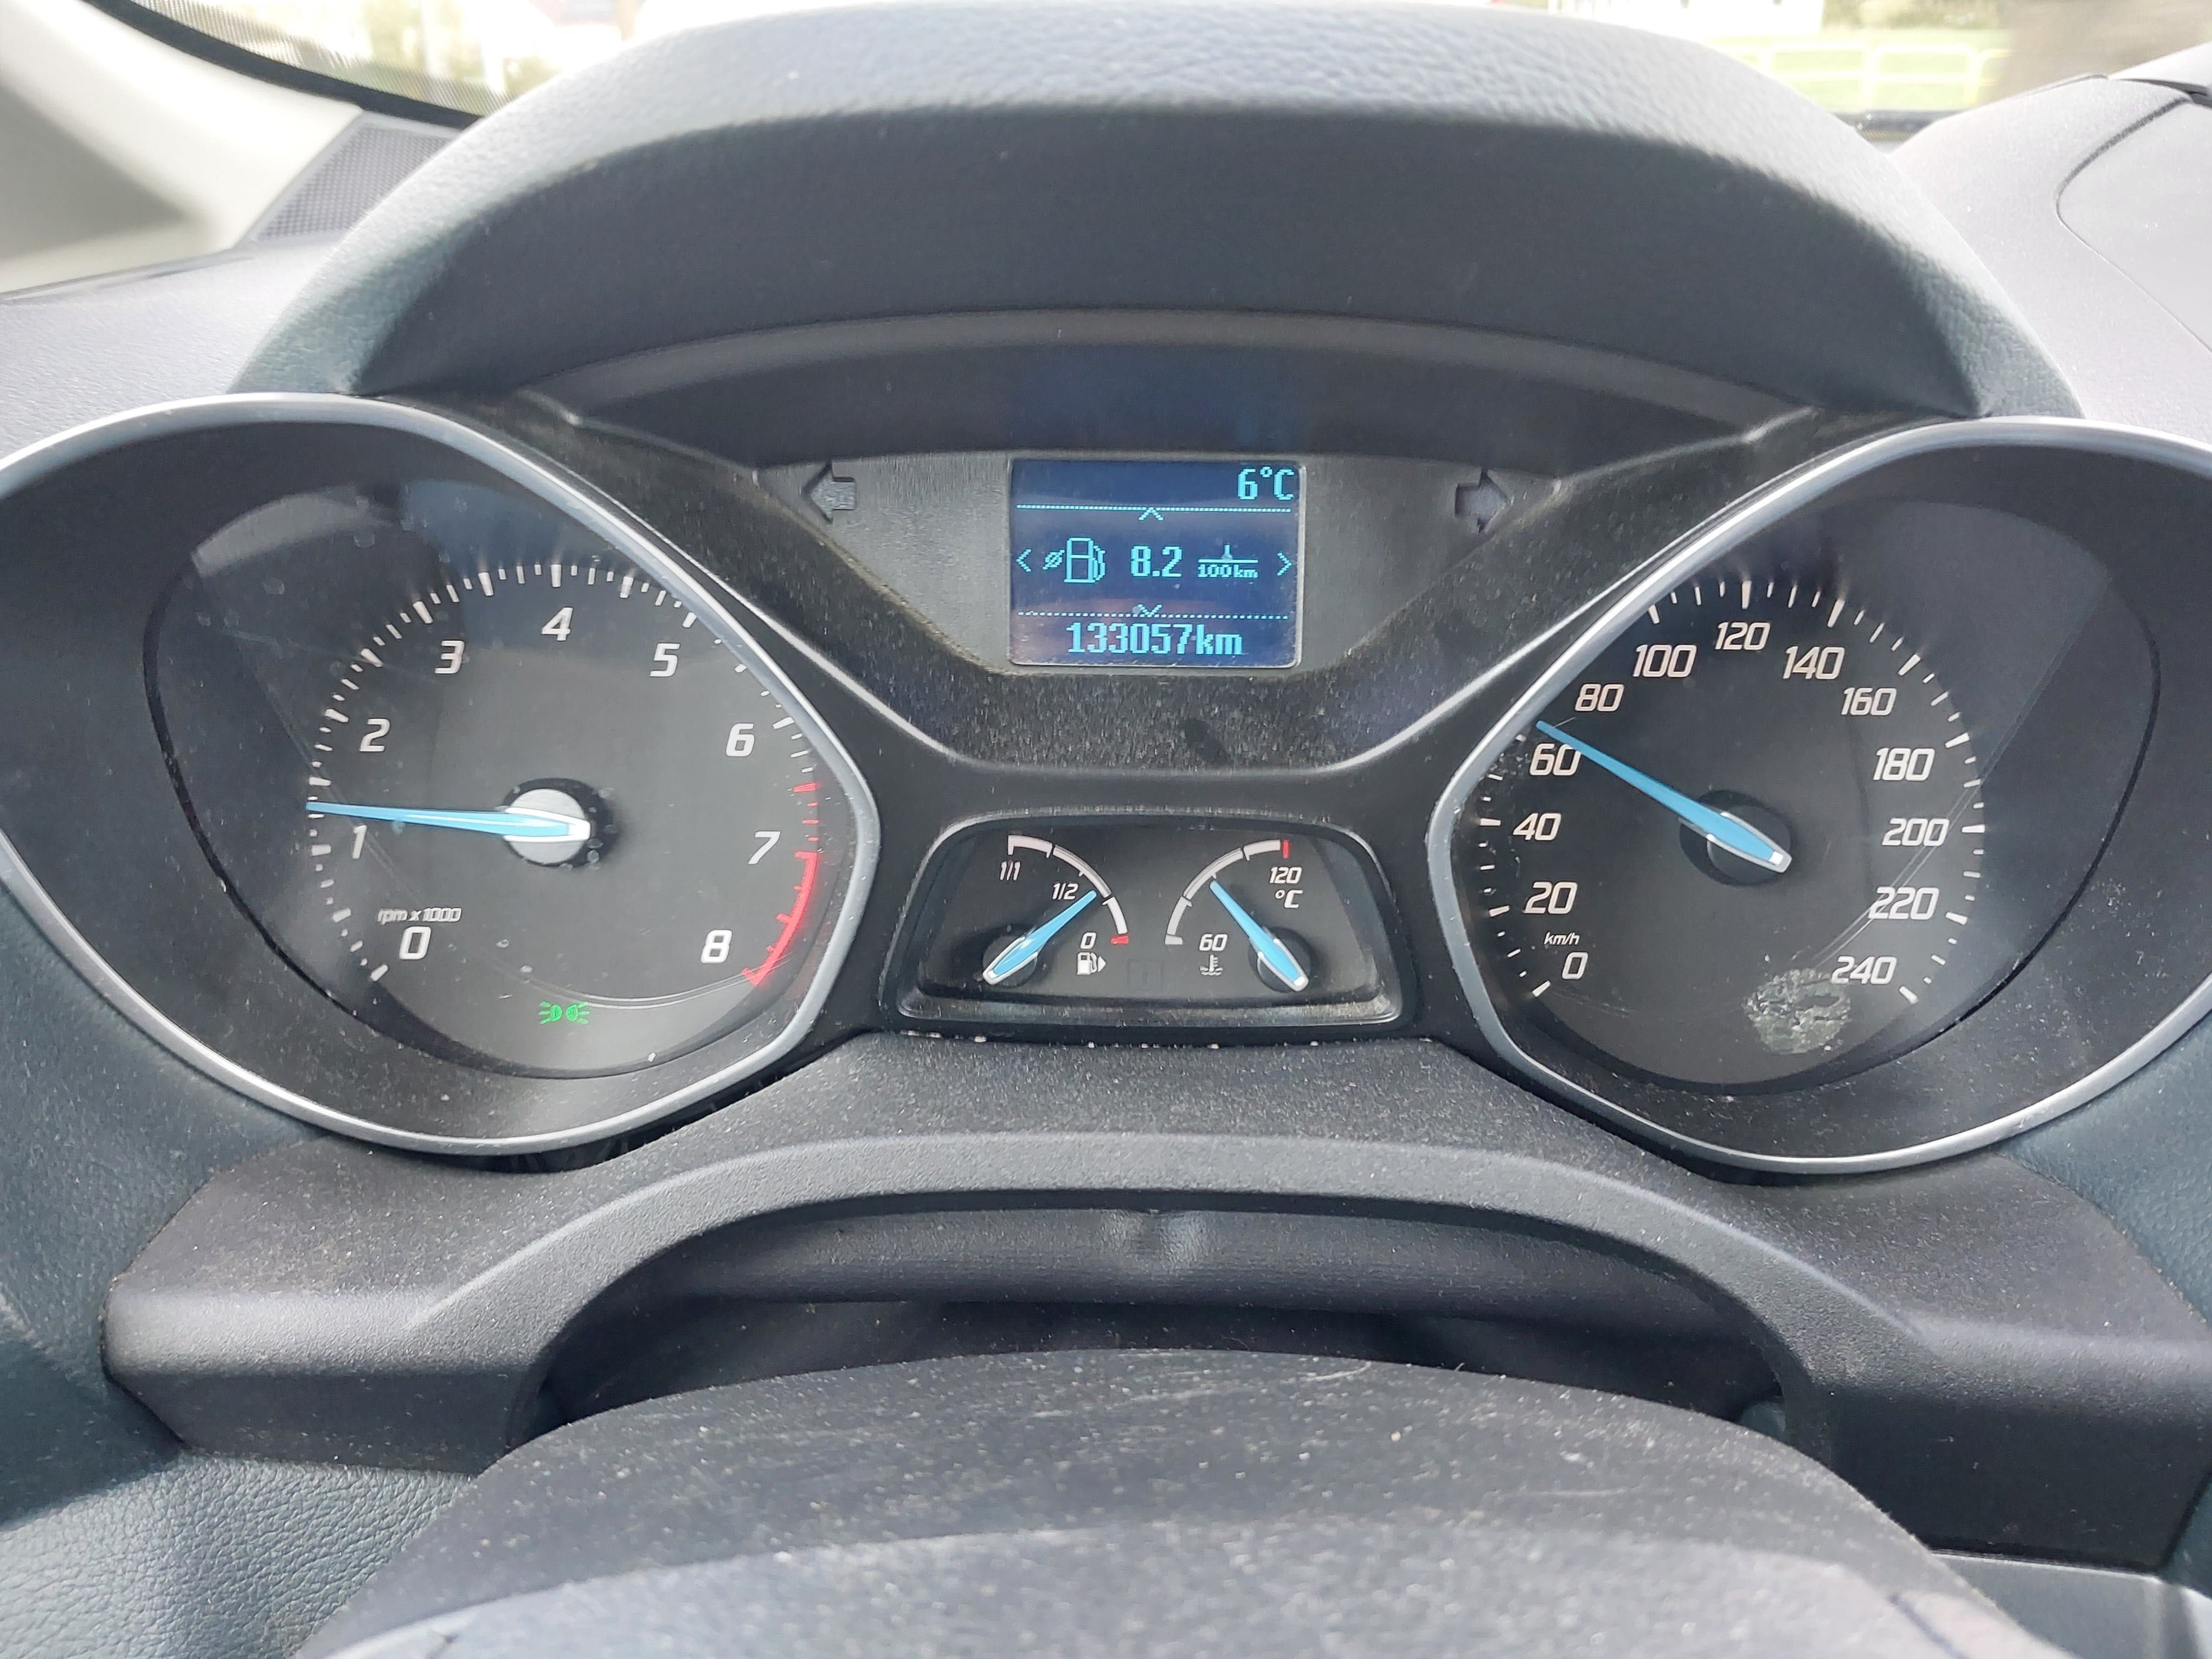 Ford C max 1.6 benzyna bezawaryjny silnik